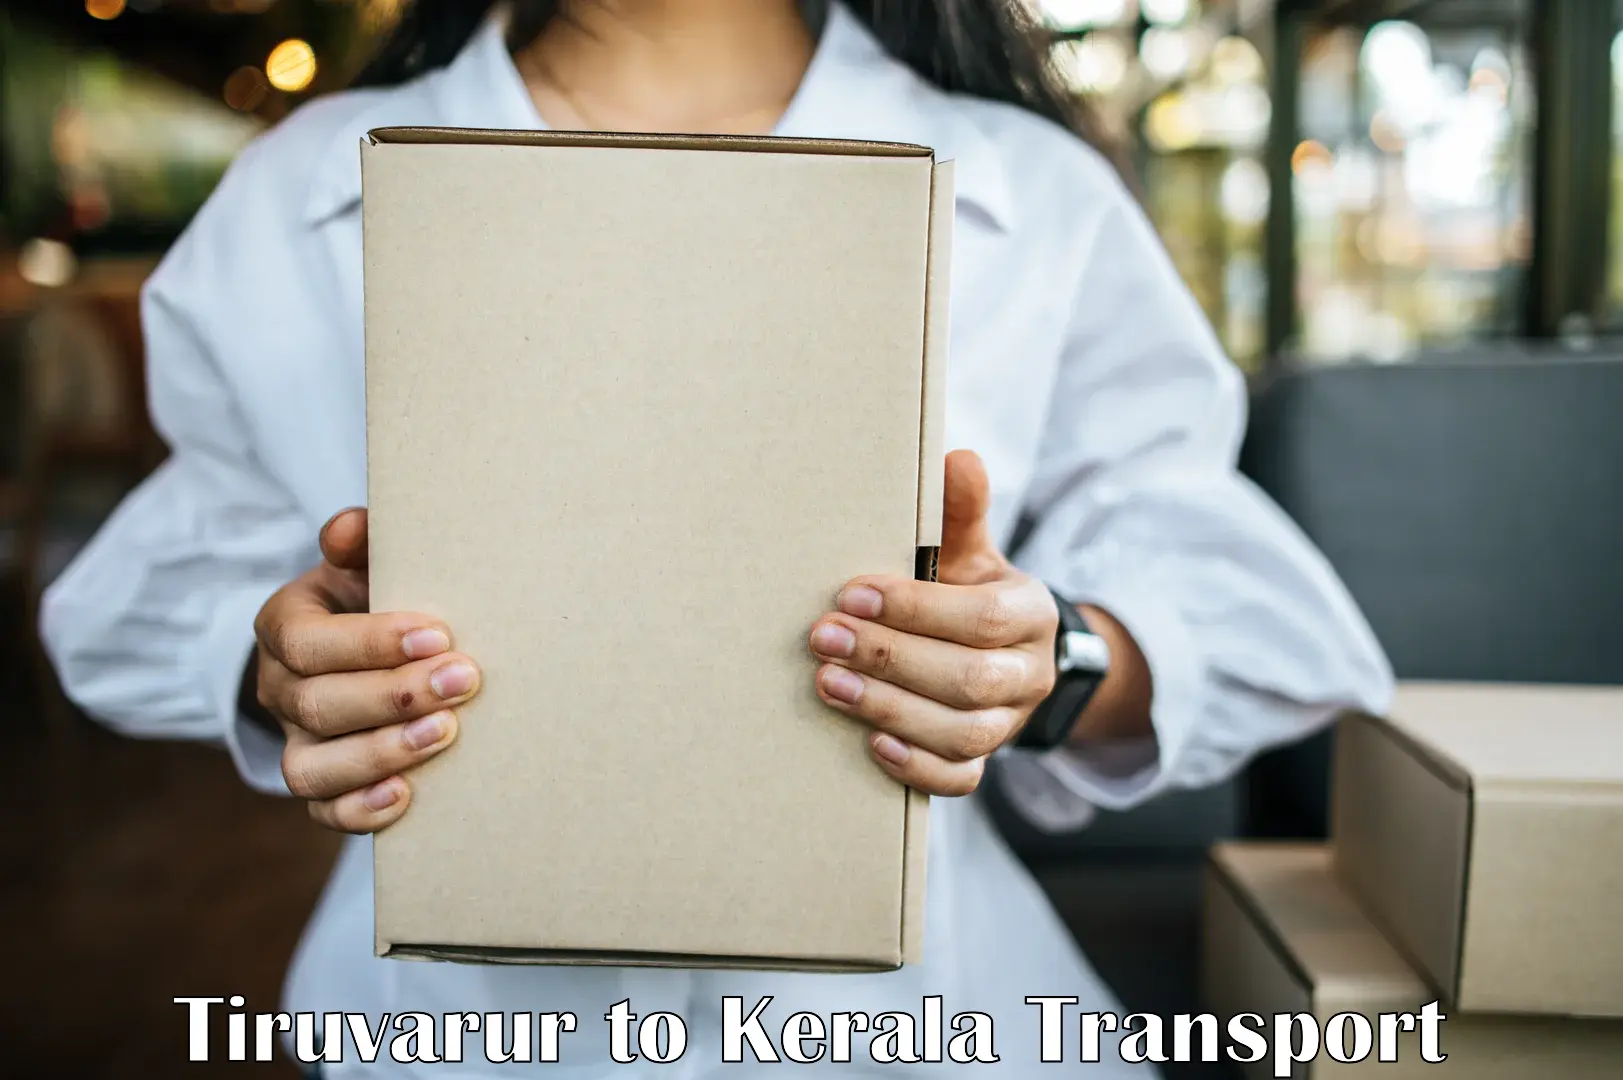 Daily transport service Tiruvarur to Ramankary